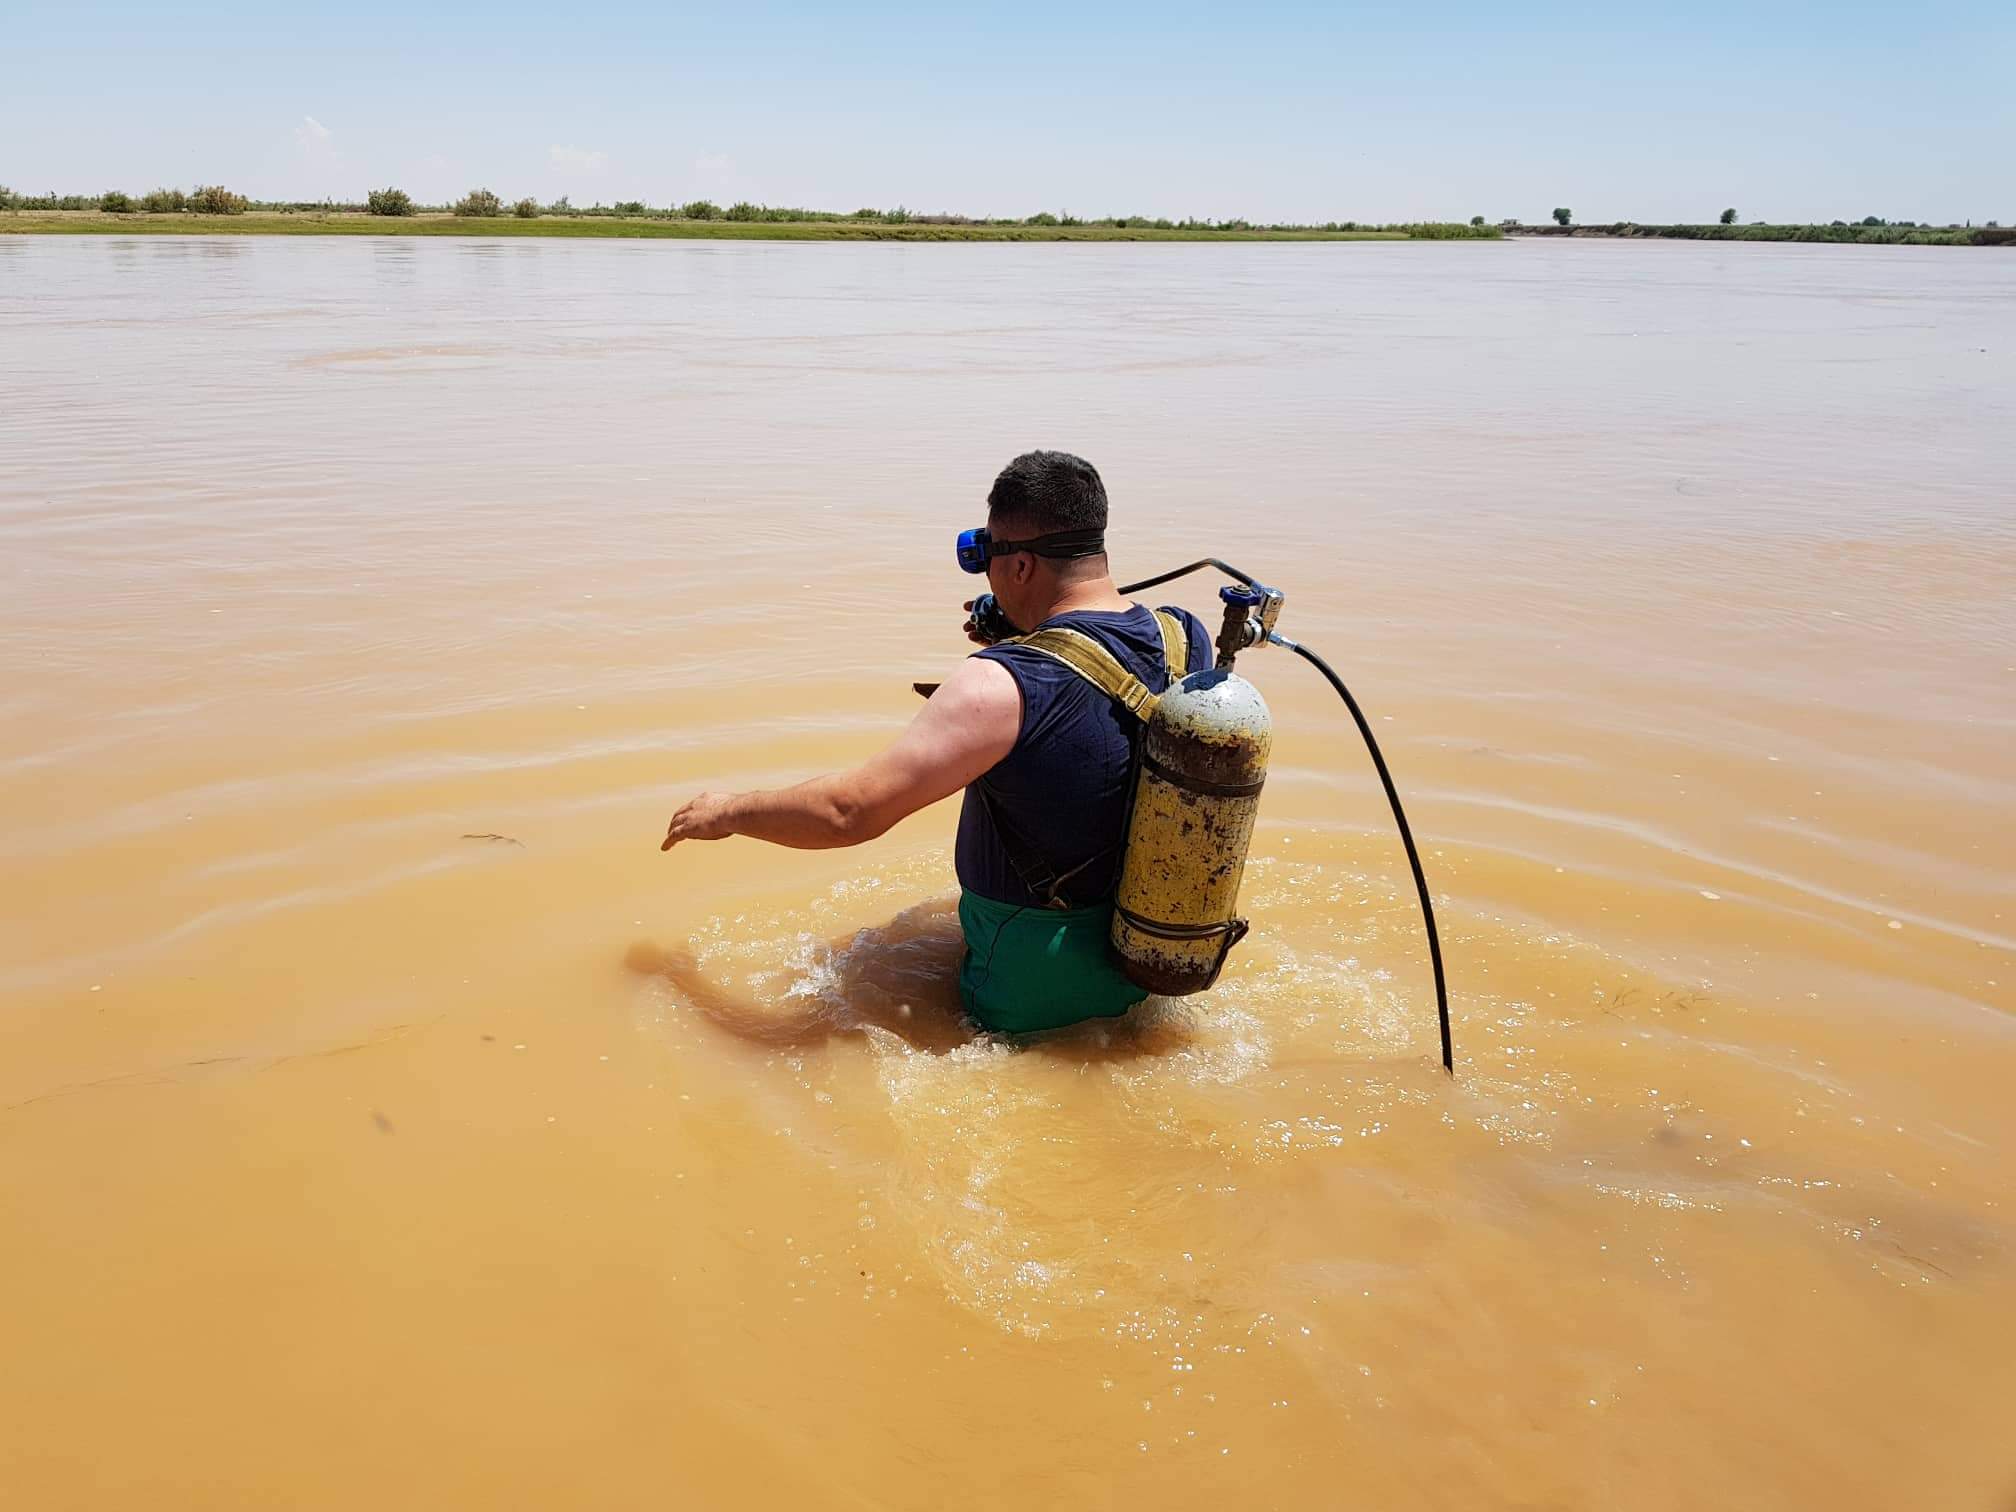 ازدياد حالات الغرق في نهر الفرات وتسجيل 6 حالات جديدة في دير الزور والرقة خلال أقل من 24 ساعة